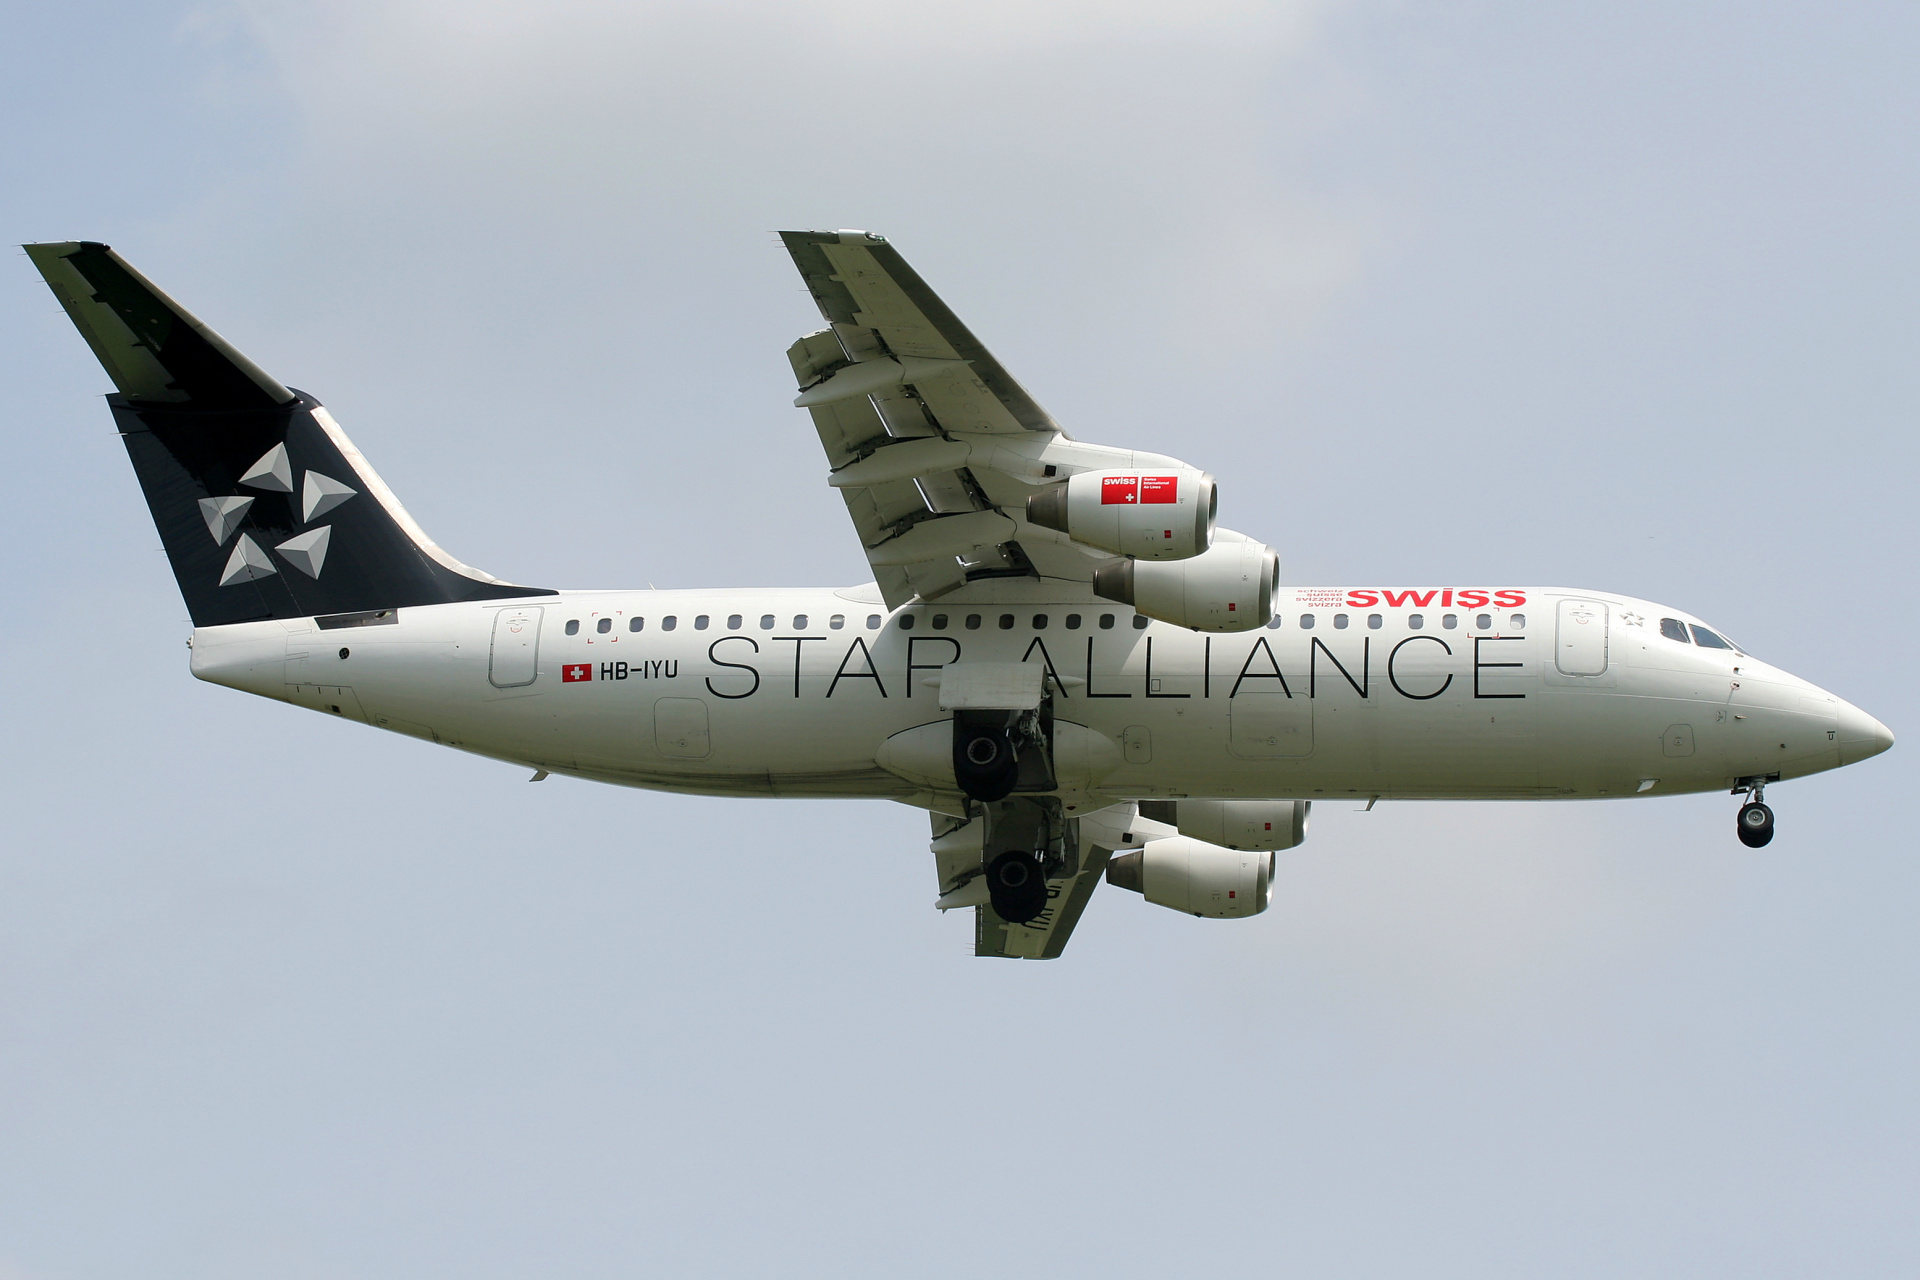 HB-IYU (malowanie Star Alliance) (Samoloty » Spotting na EPWA » BAe 146 i pochodne wersje » Avro RJ100 » Swiss Global Air Lines)